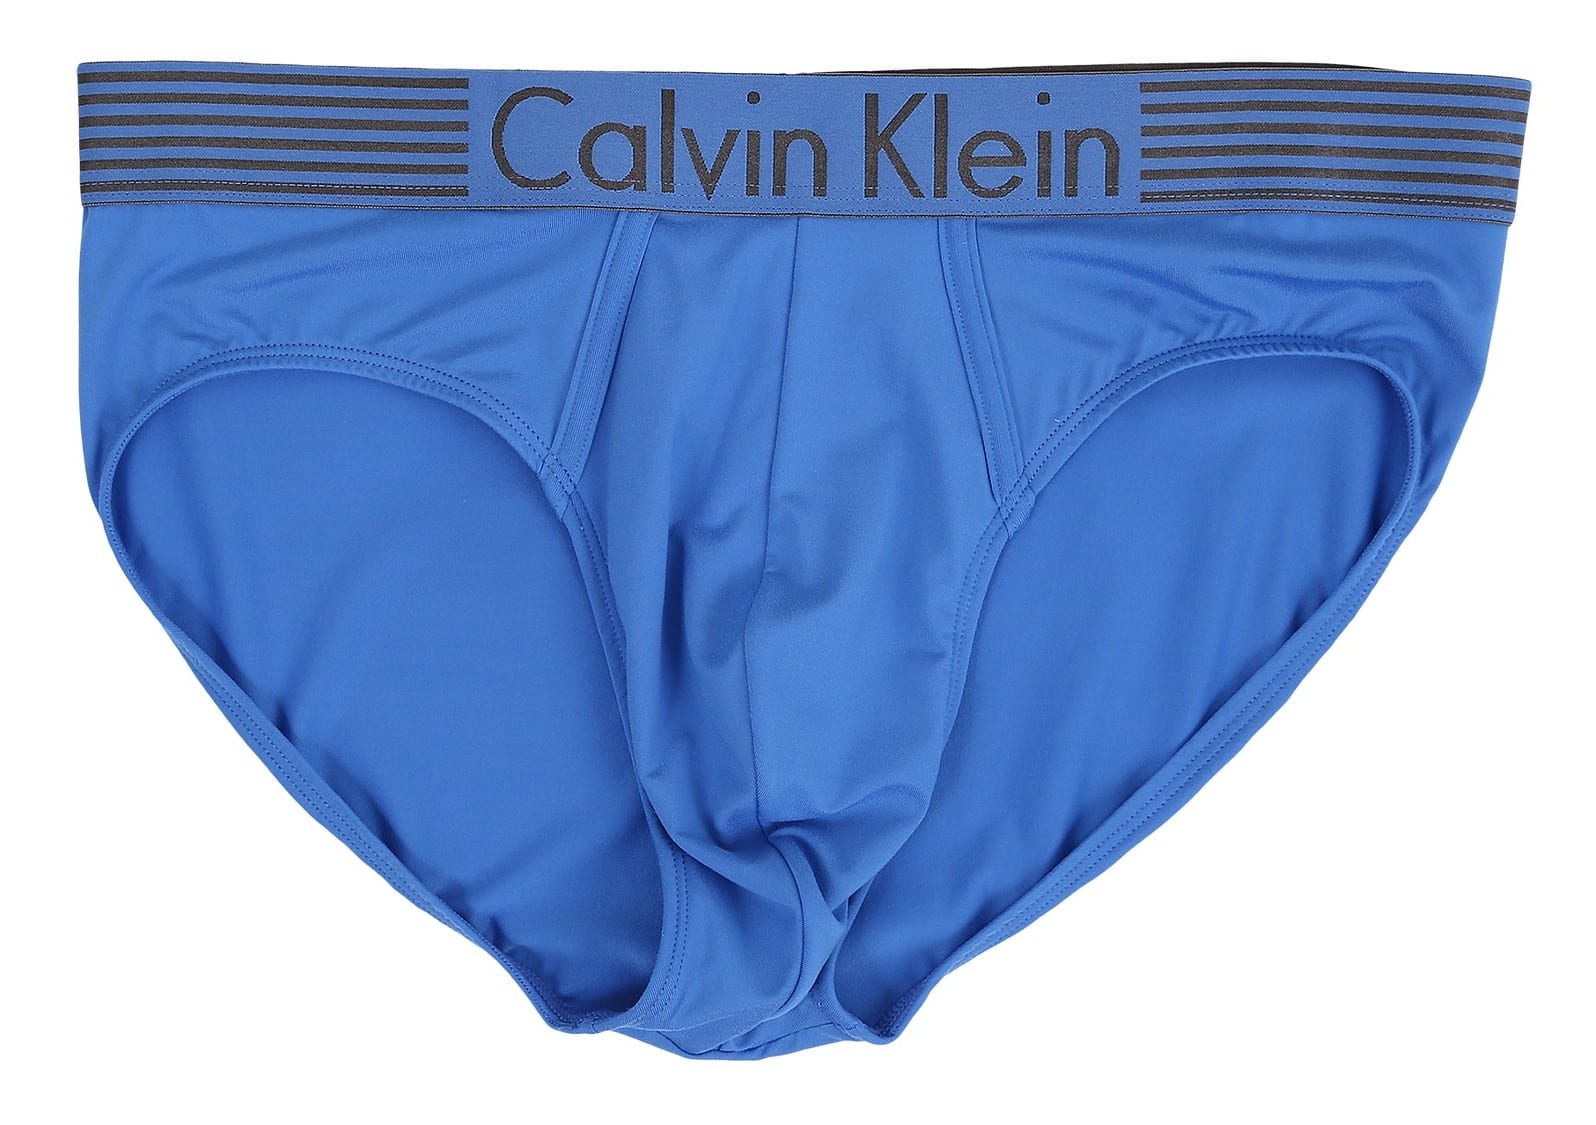 2016 Calvin Klein Underwear for Men in Blue (Briefs)